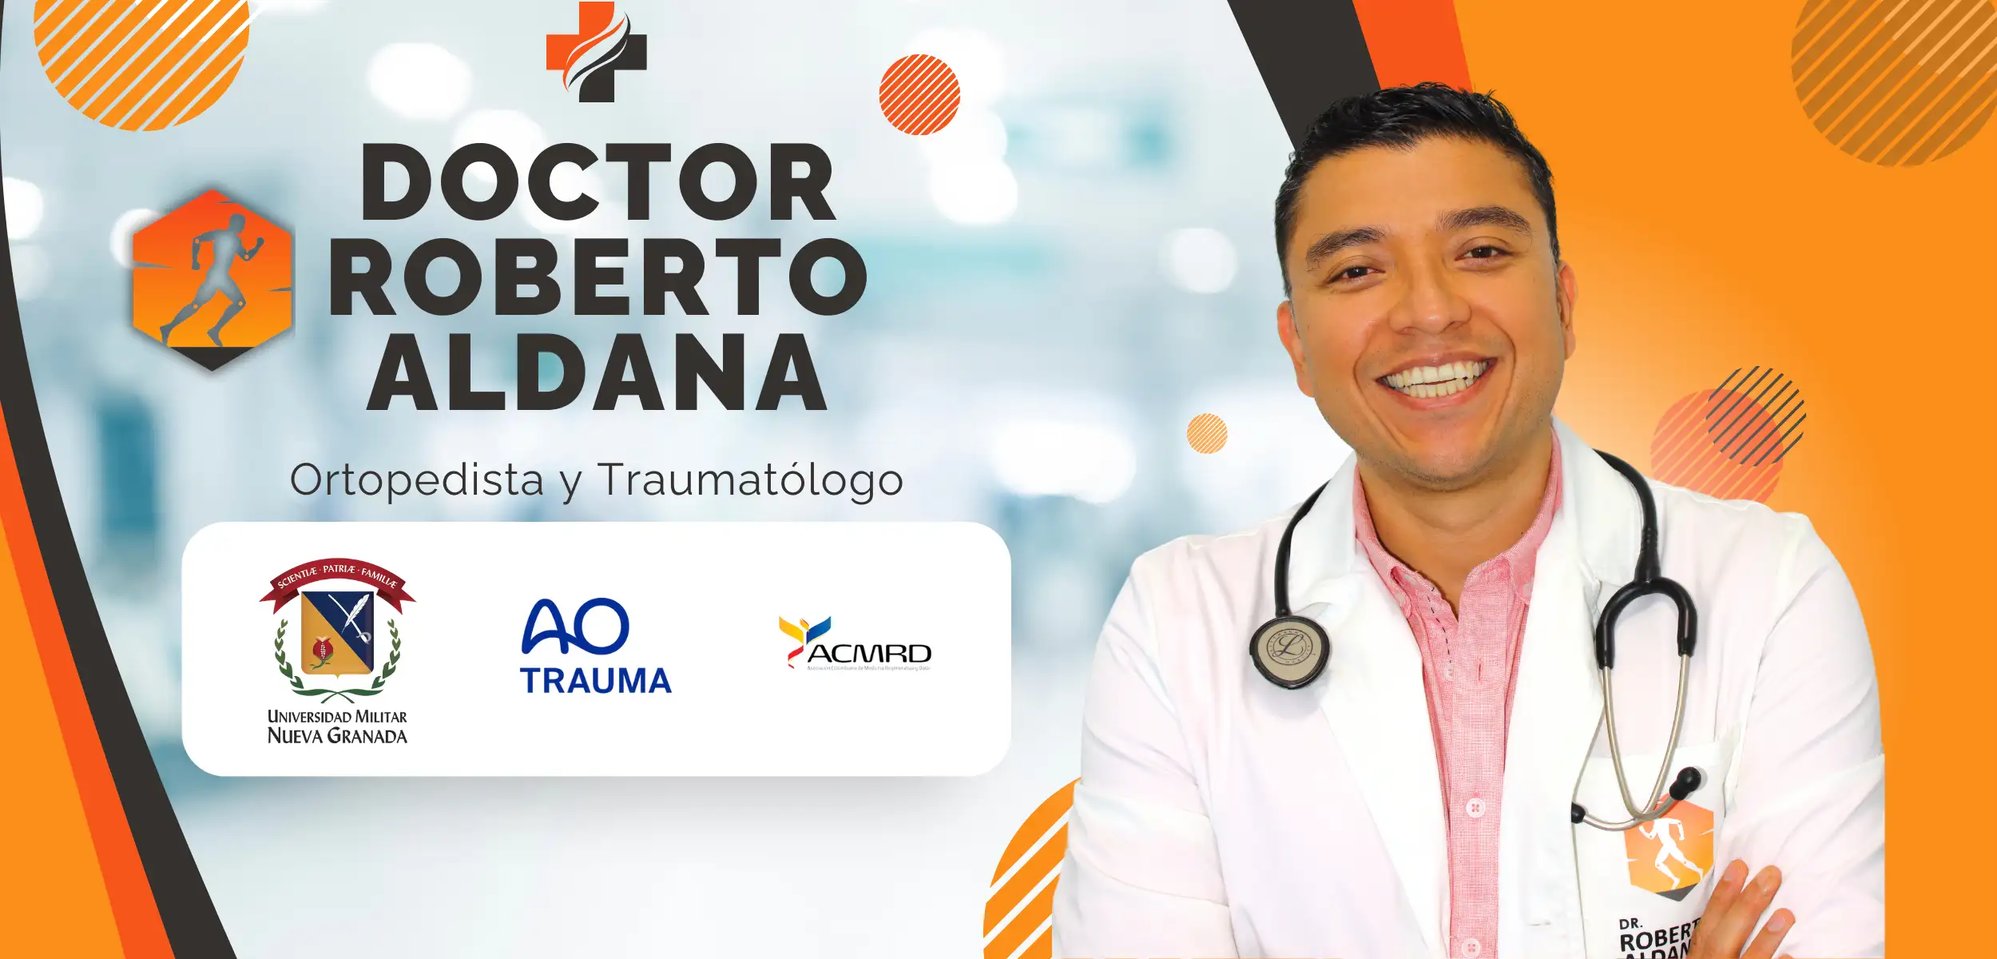 Doctor Roberto Aldana Ortopedista y Traumatólogo particular en bogotá, colombia